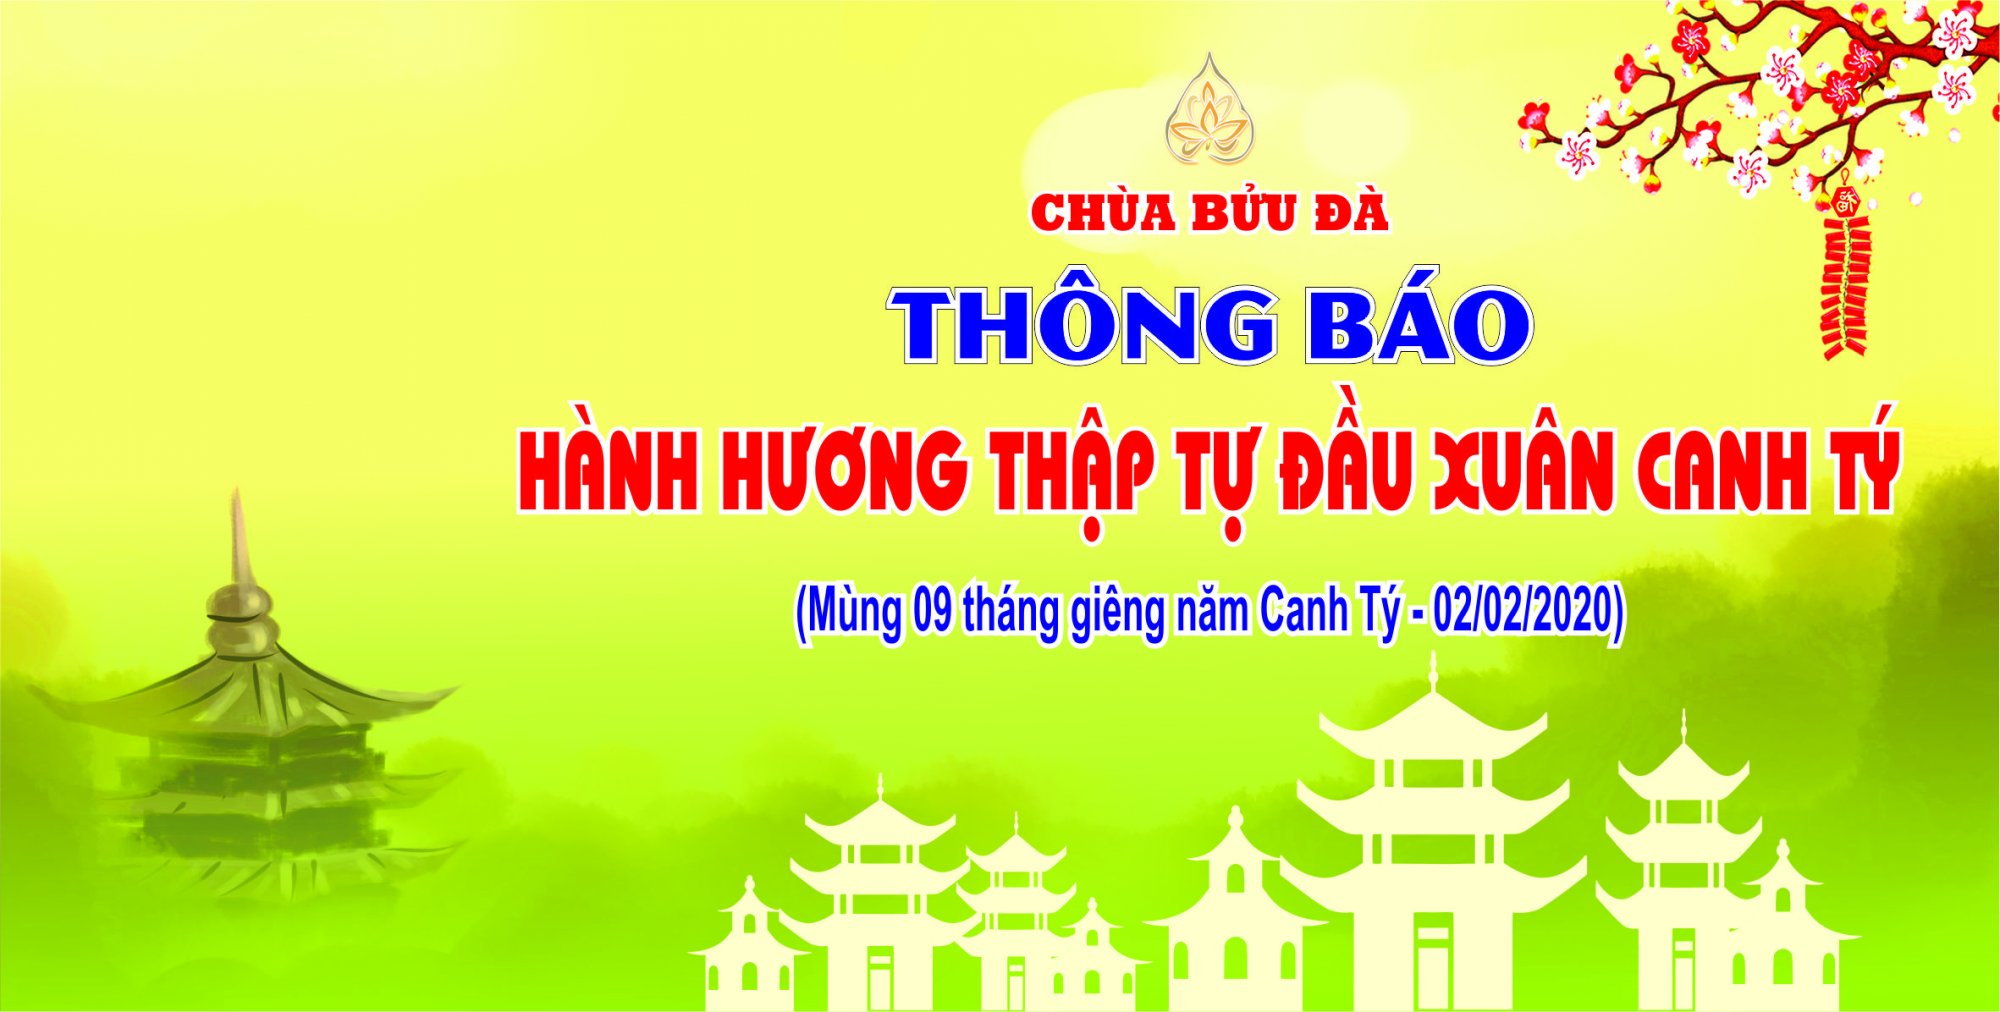 THONG-BAO-HANH-HUONG